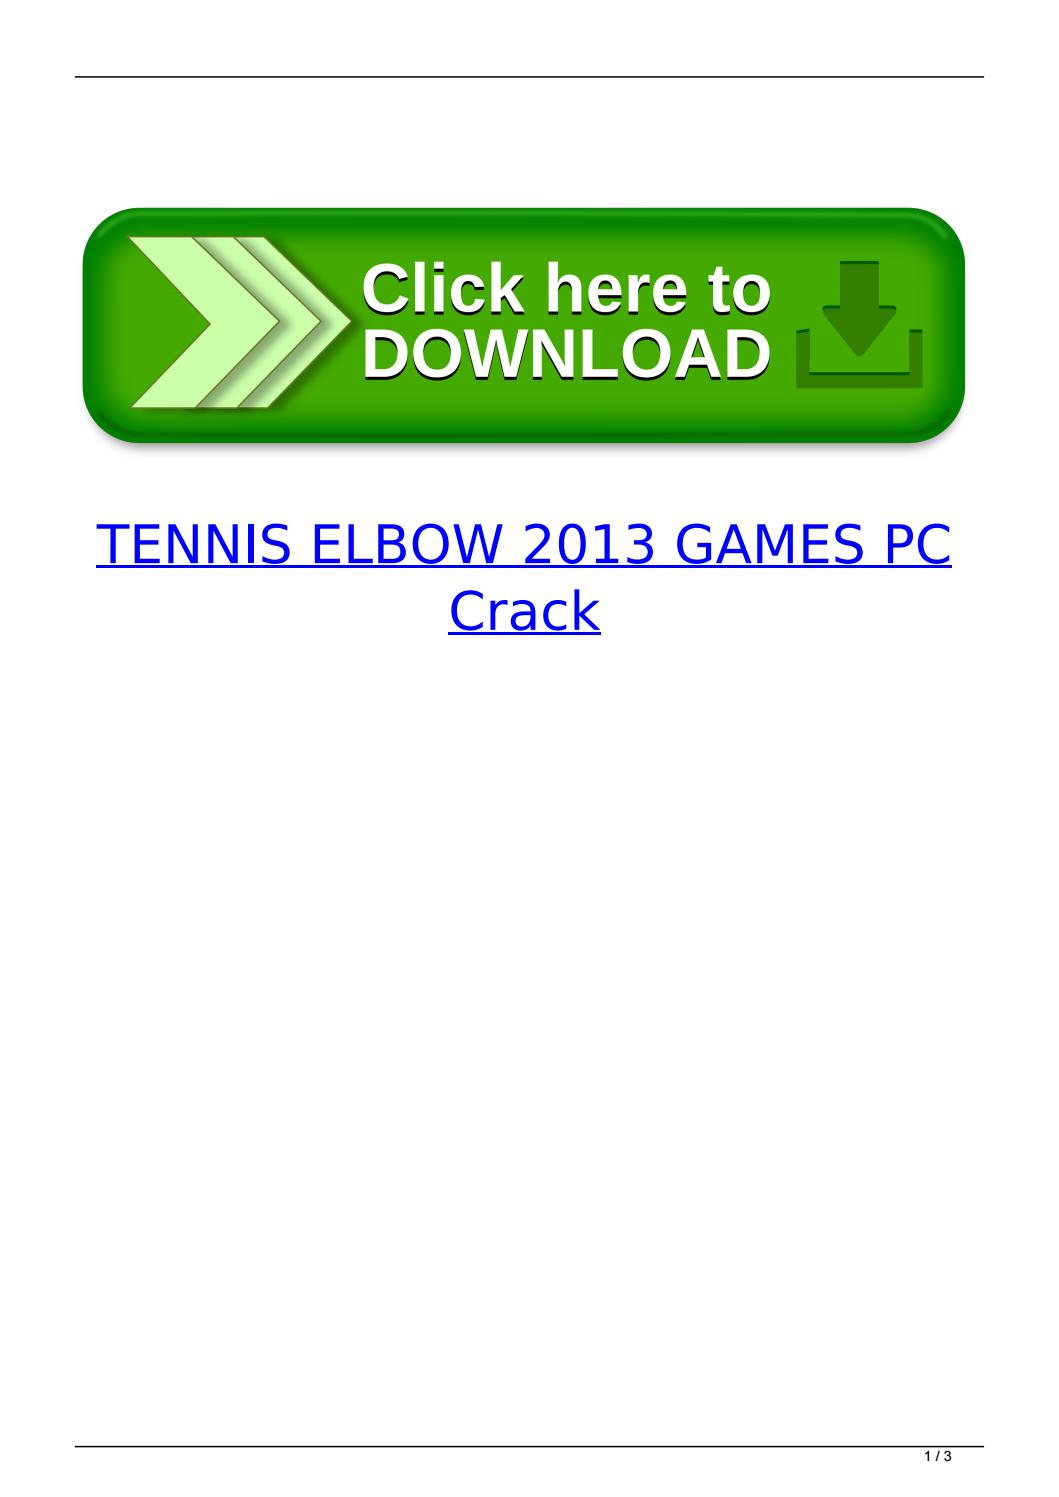 Tennis Elbow 2013 Crack File